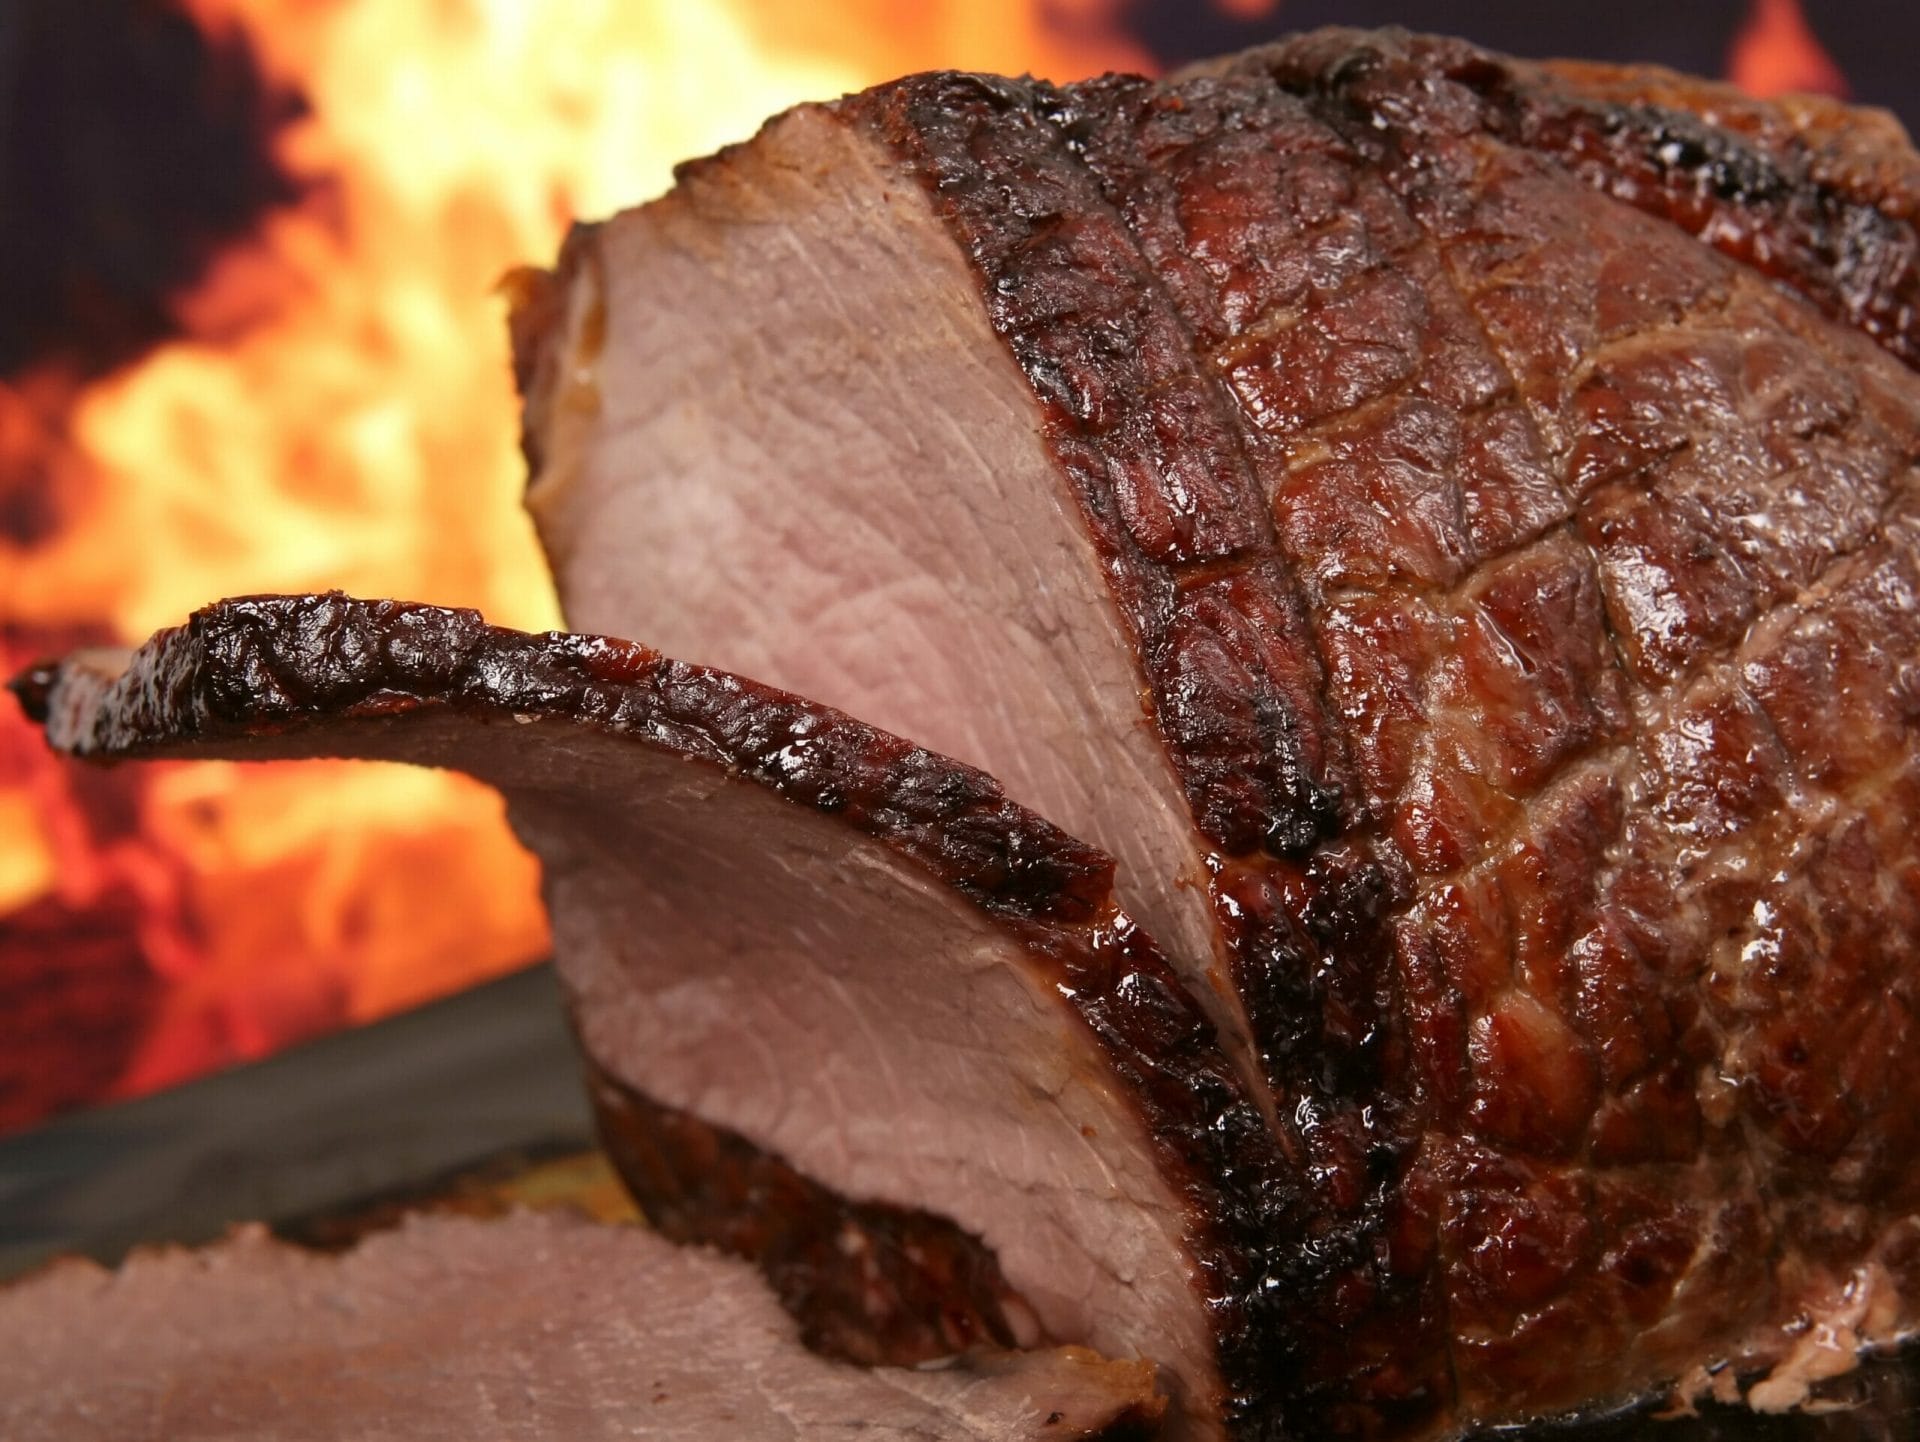 A Capodanno le nostre lenticchie possono accompagnare un piatto caldo e fumante di arrosto di carne